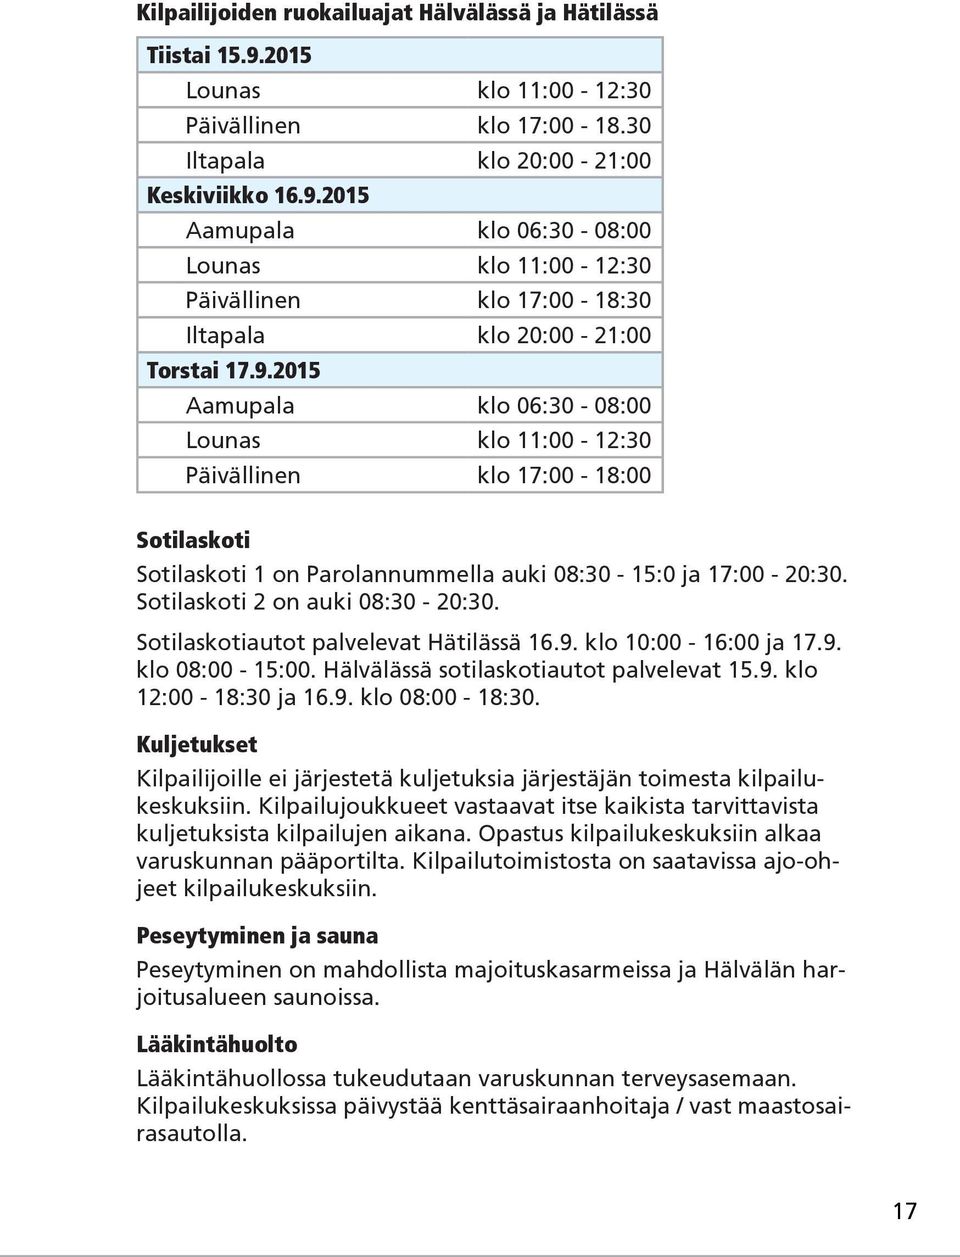 Sotilaskotiautot palvelevat Hätilässä 16.9. klo 10:00-16:00 ja 17.9. klo 08:00-15:00. Hälvälässä sotilaskotiautot palvelevat 15.9. klo 12:00-18:30 ja 16.9. klo 08:00-18:30.